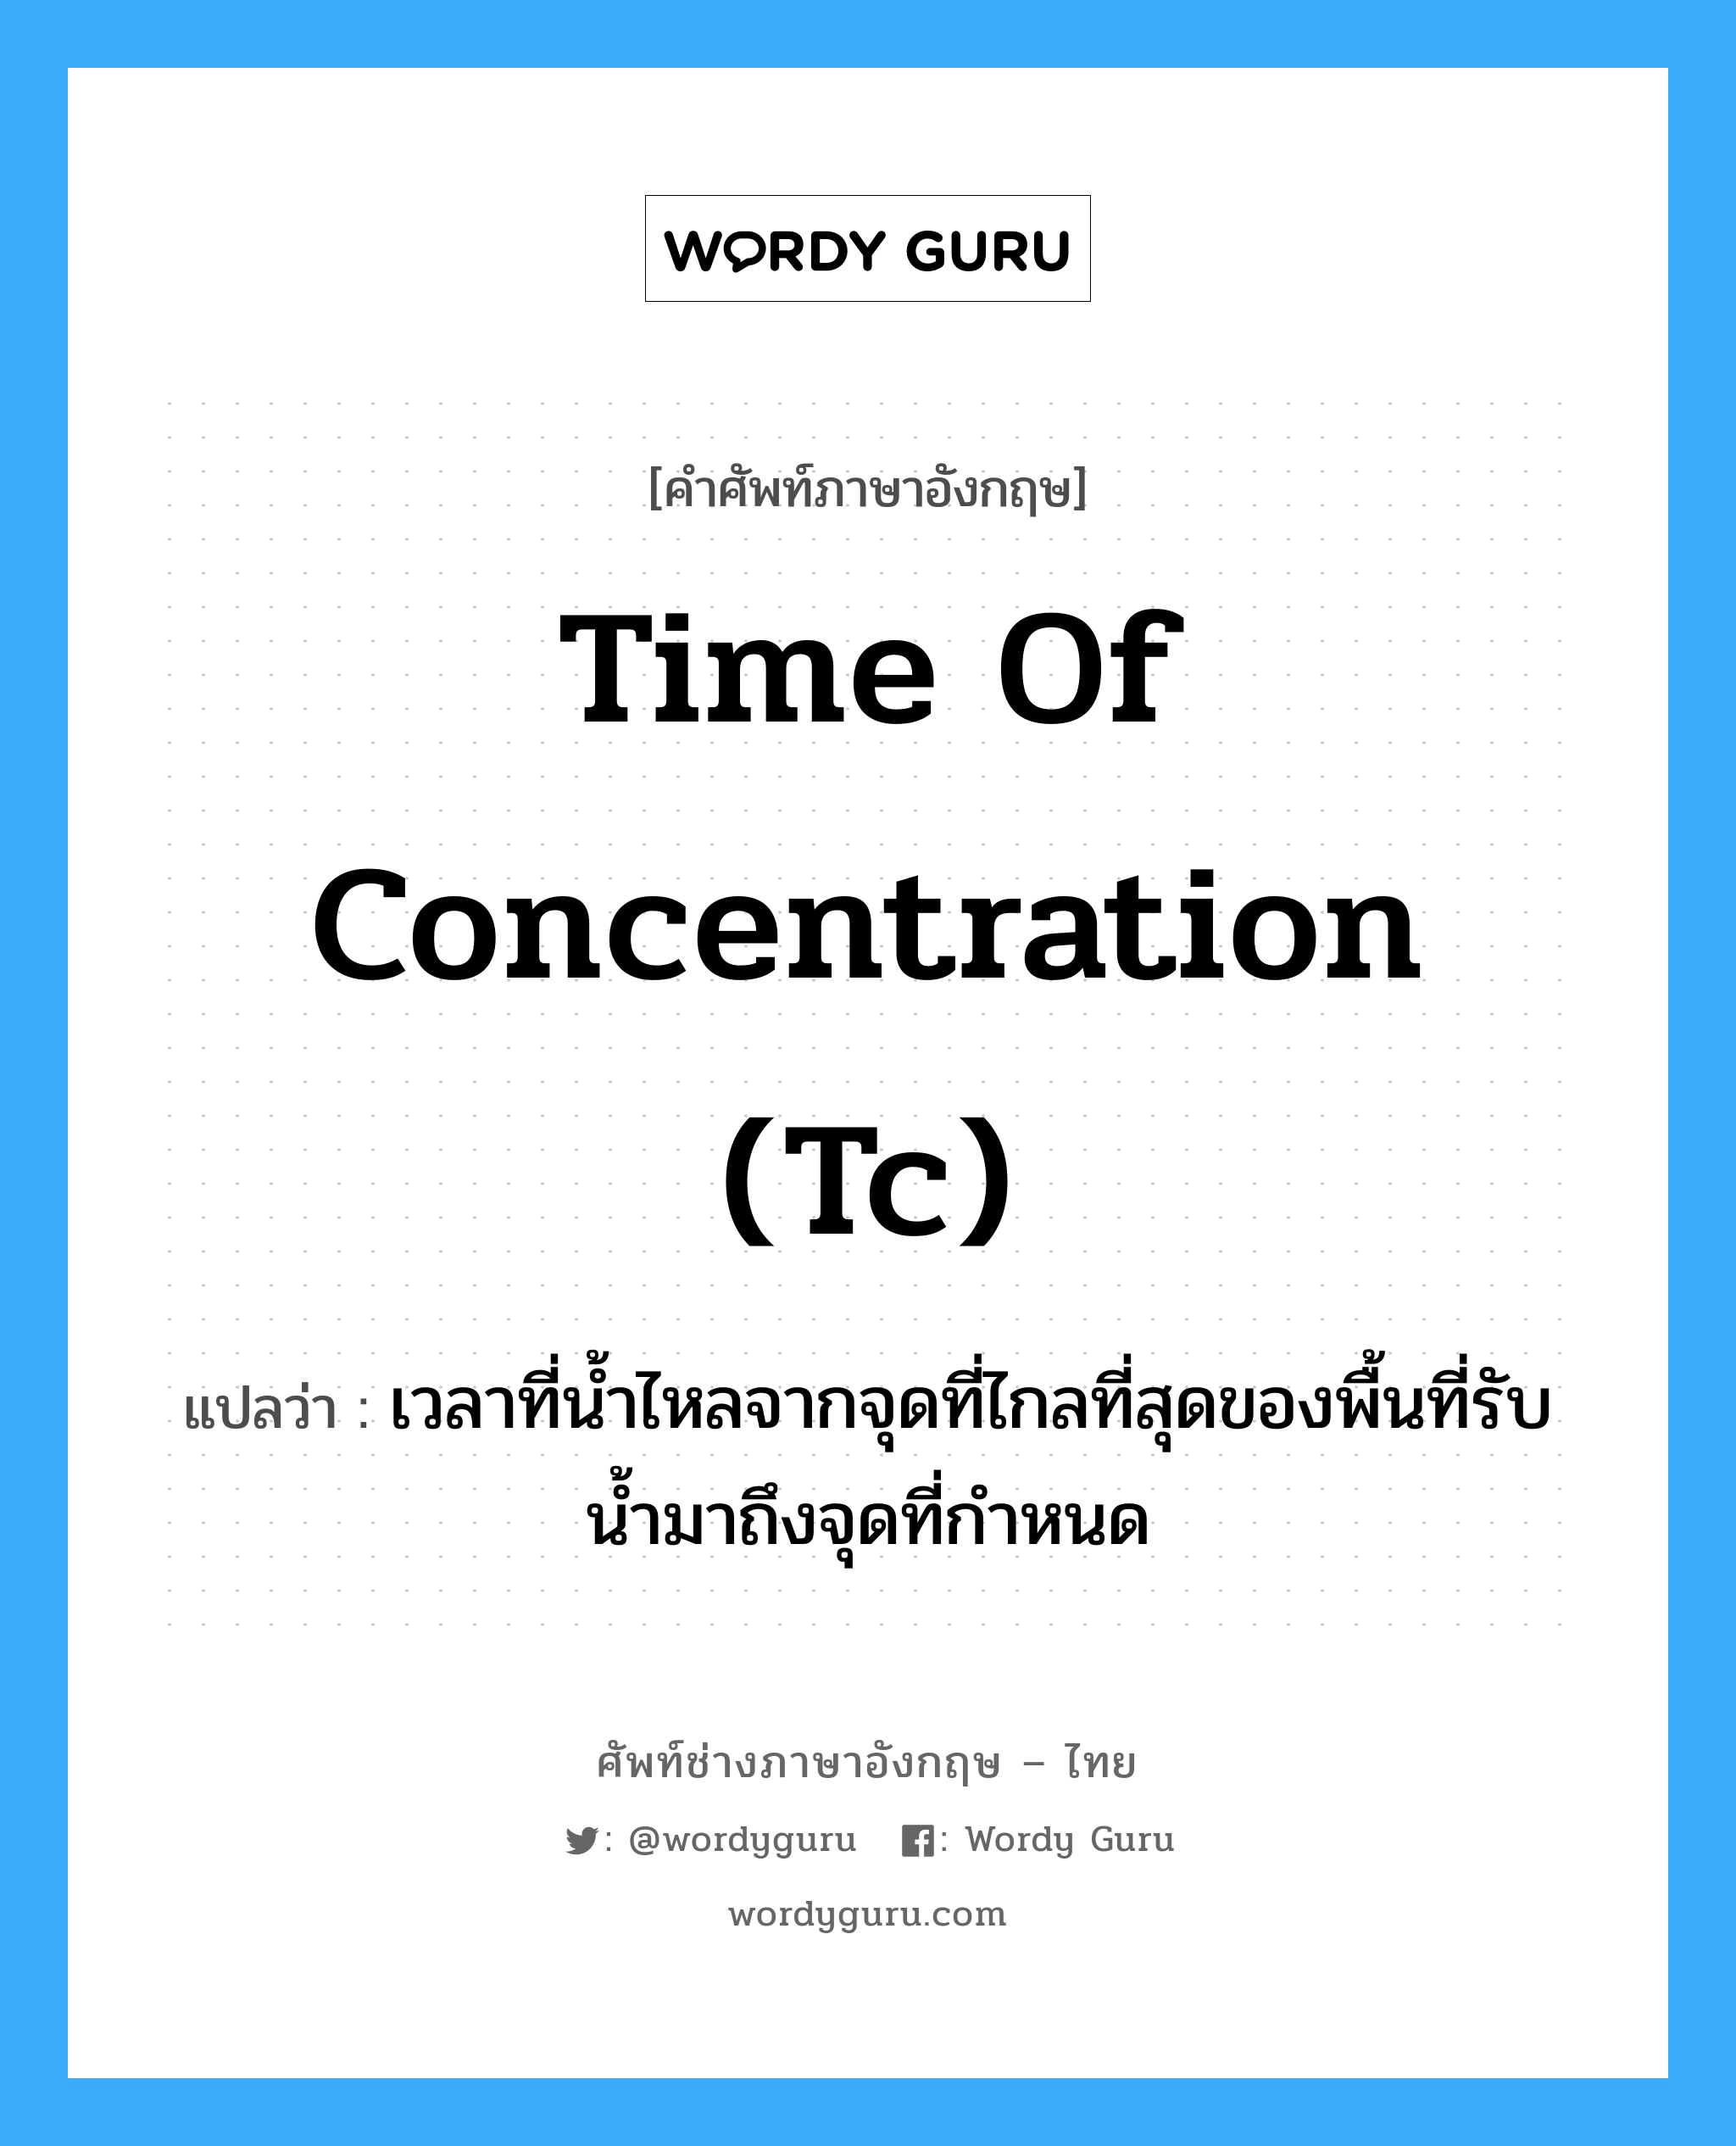 time of concentration (Tc) แปลว่า?, คำศัพท์ช่างภาษาอังกฤษ - ไทย time of concentration (Tc) คำศัพท์ภาษาอังกฤษ time of concentration (Tc) แปลว่า เวลาที่น้ำไหลจากจุดที่ไกลที่สุดของพื้นที่รับน้ำมาถึงจุดที่กำหนด